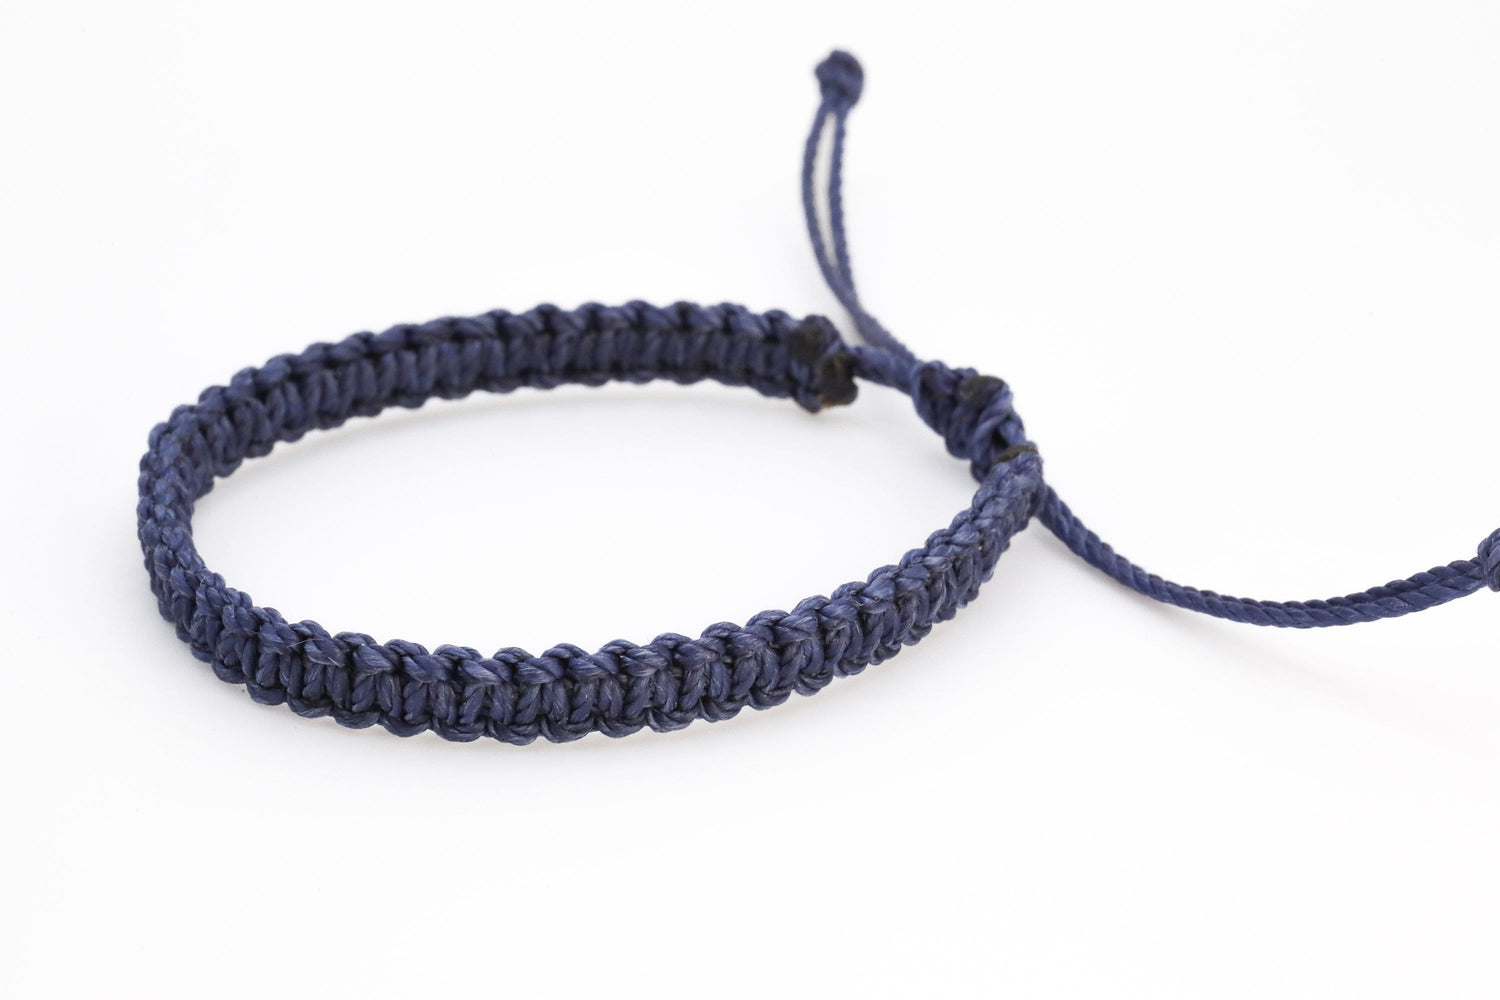 Wholesale Blue Macrame Bracelets: Stylish and Adjustable